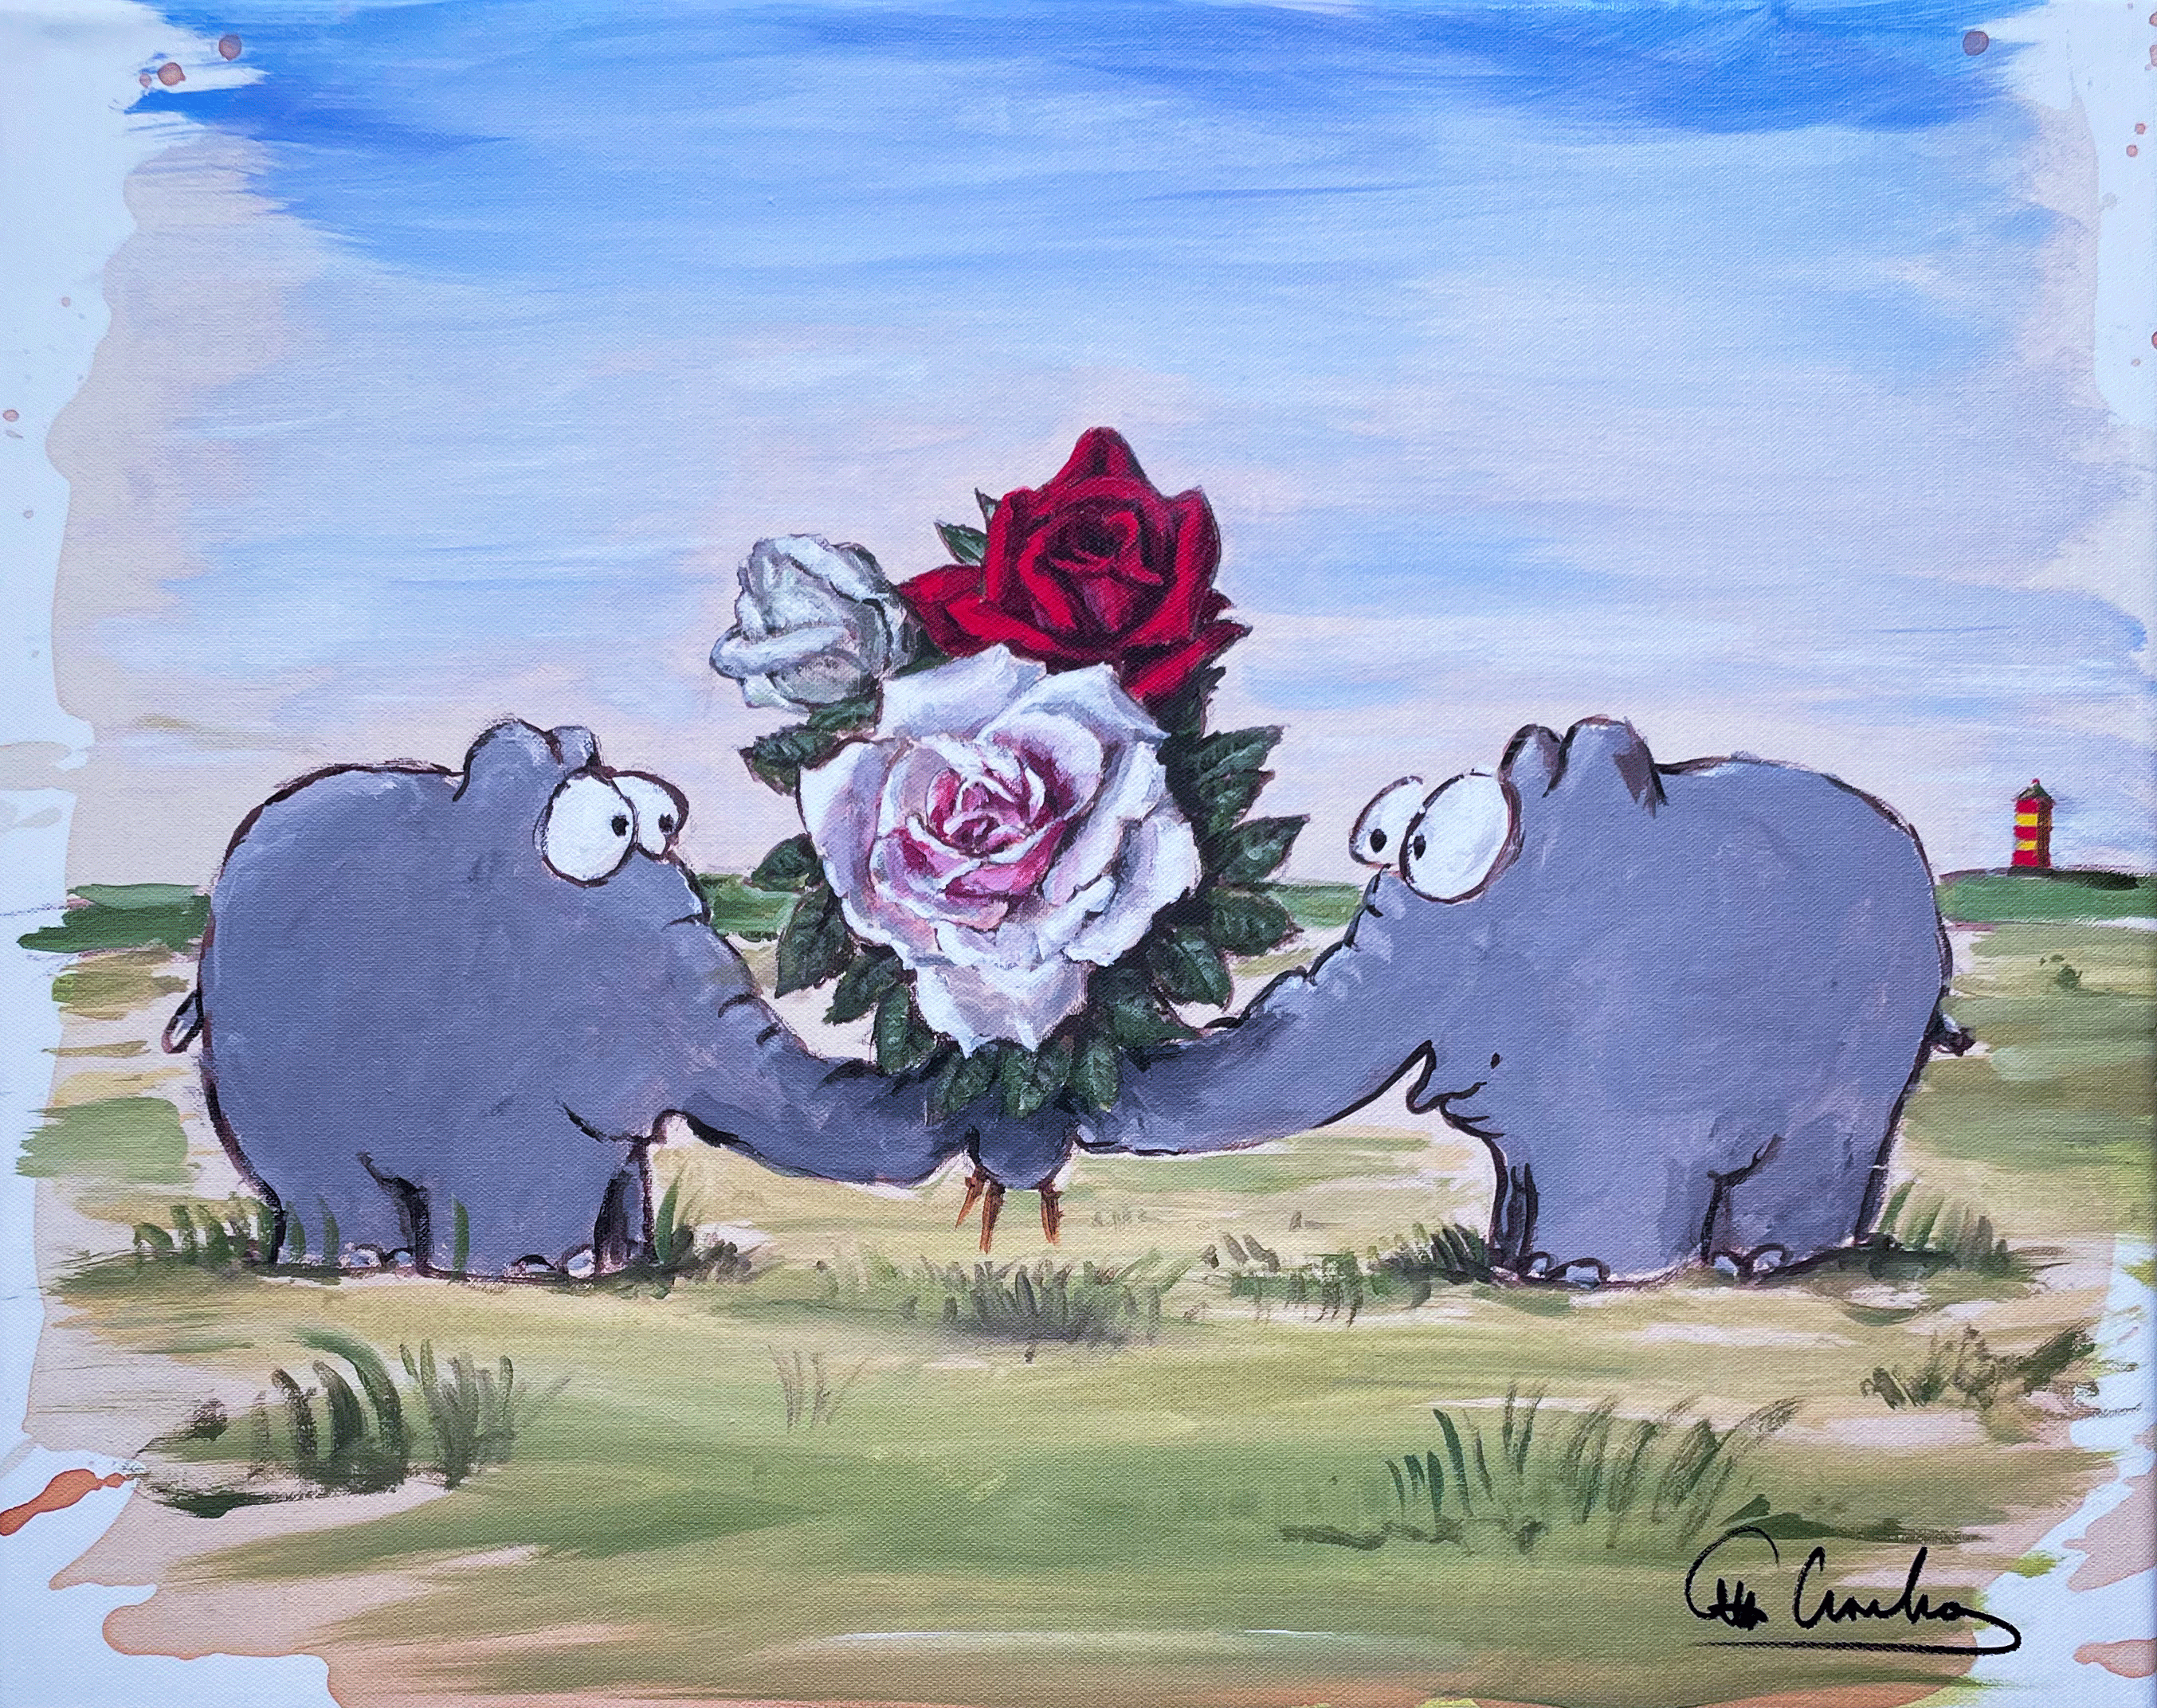 Otto Waalkes "La vie en rose"